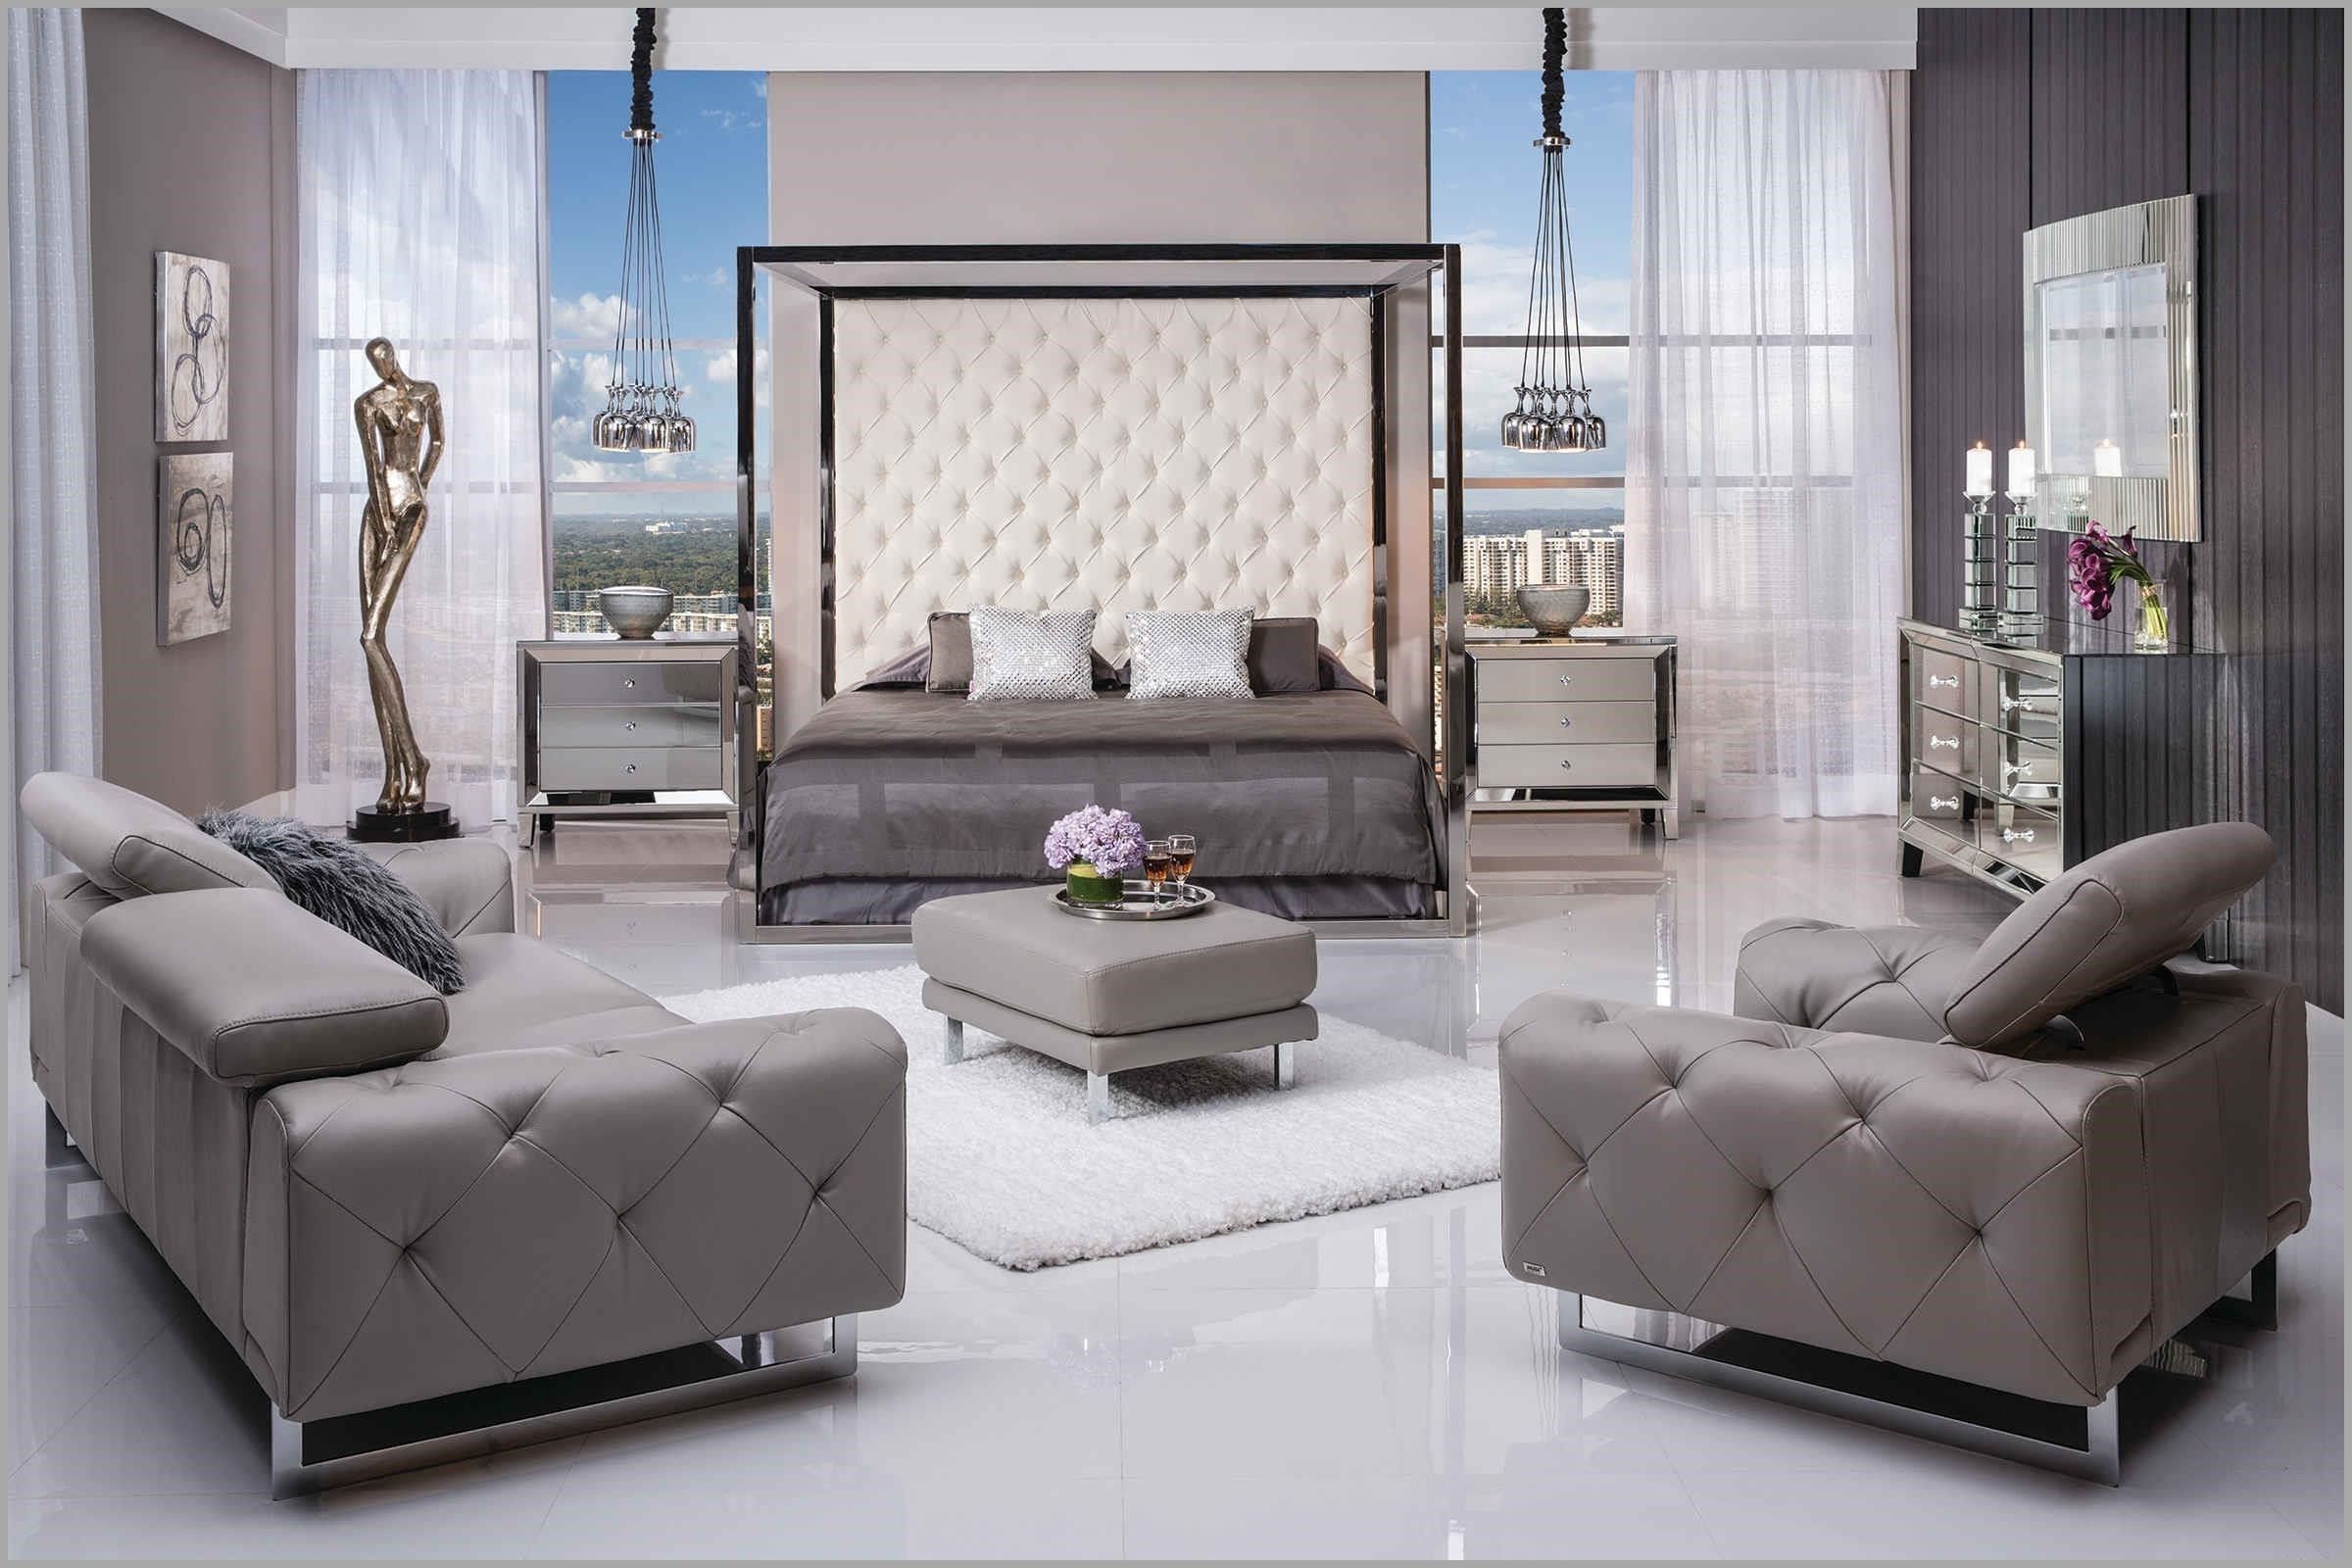 Great El Dorado Furniture Sofas Accessories 667990 – Furniture Ideas With Regard To Popular El Dorado Sectional Sofas (View 17 of 20)